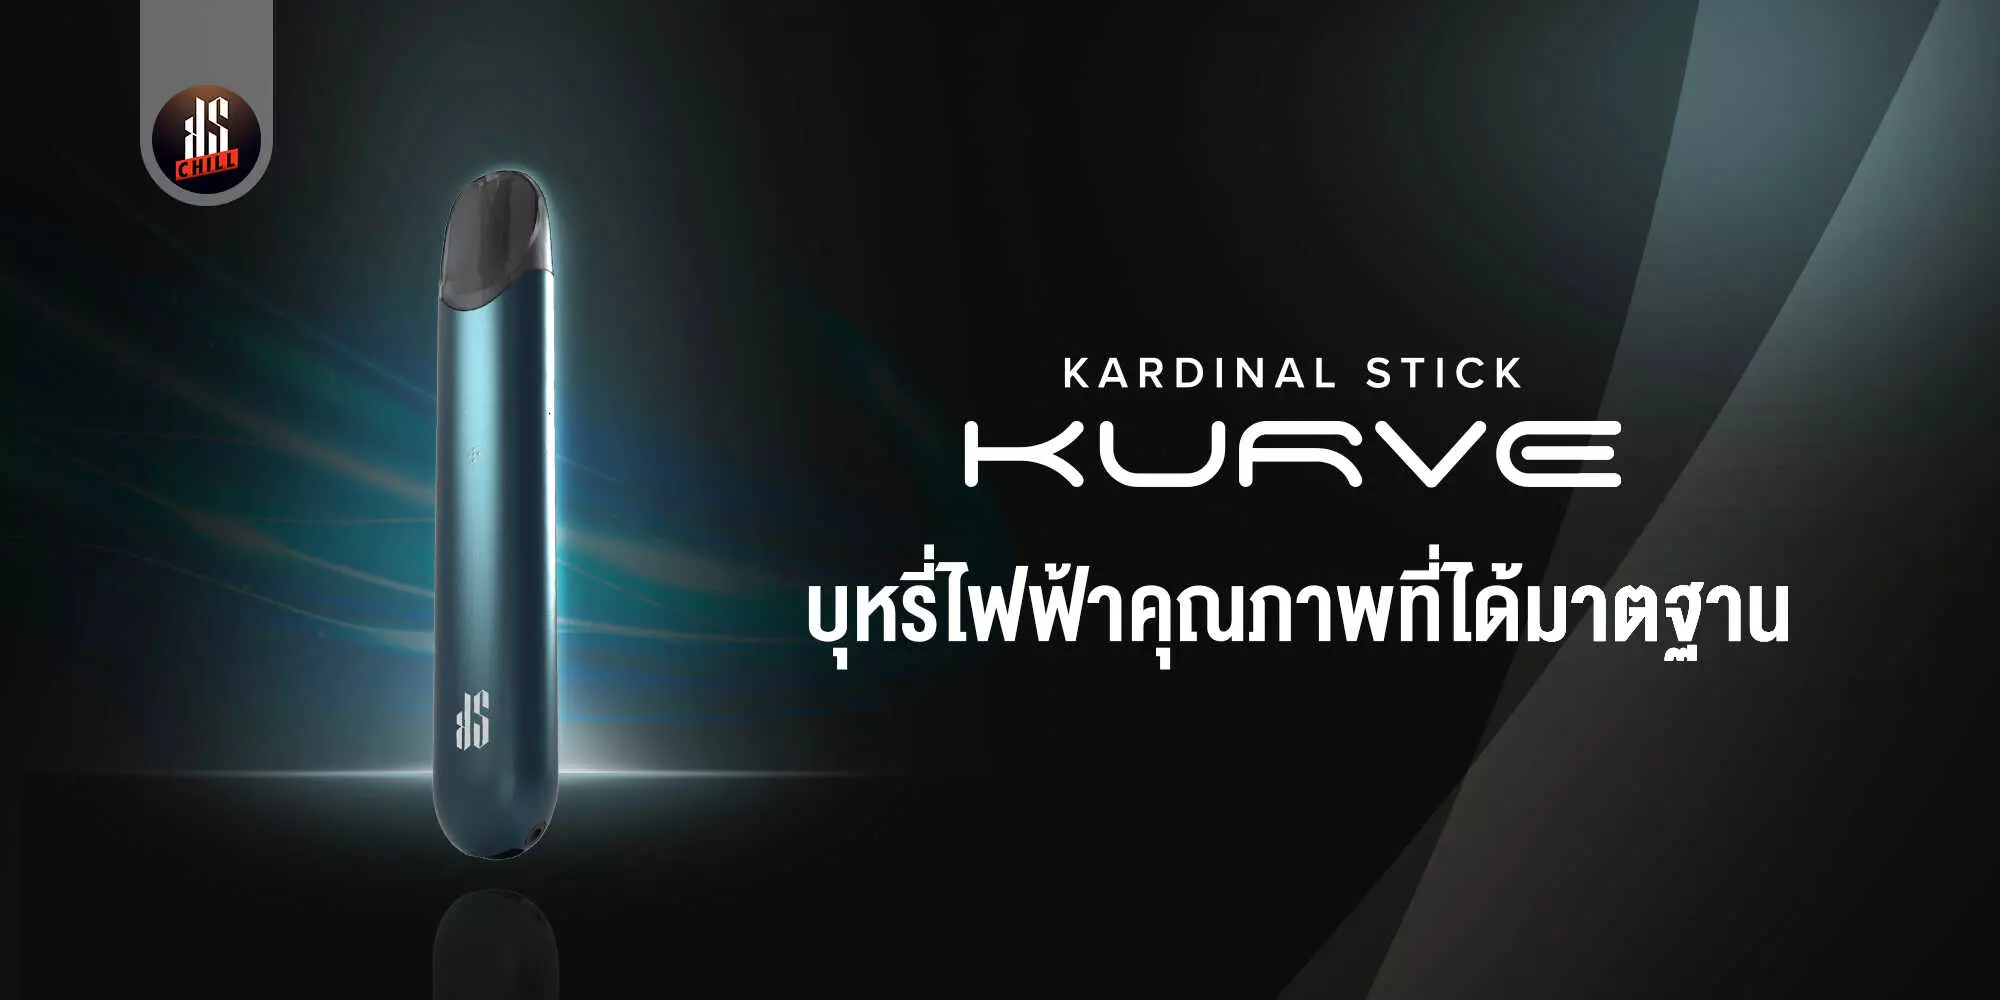 KS Kurve บุหรี่ไฟฟ้าคุณภาพที่ได้มาตรฐาน